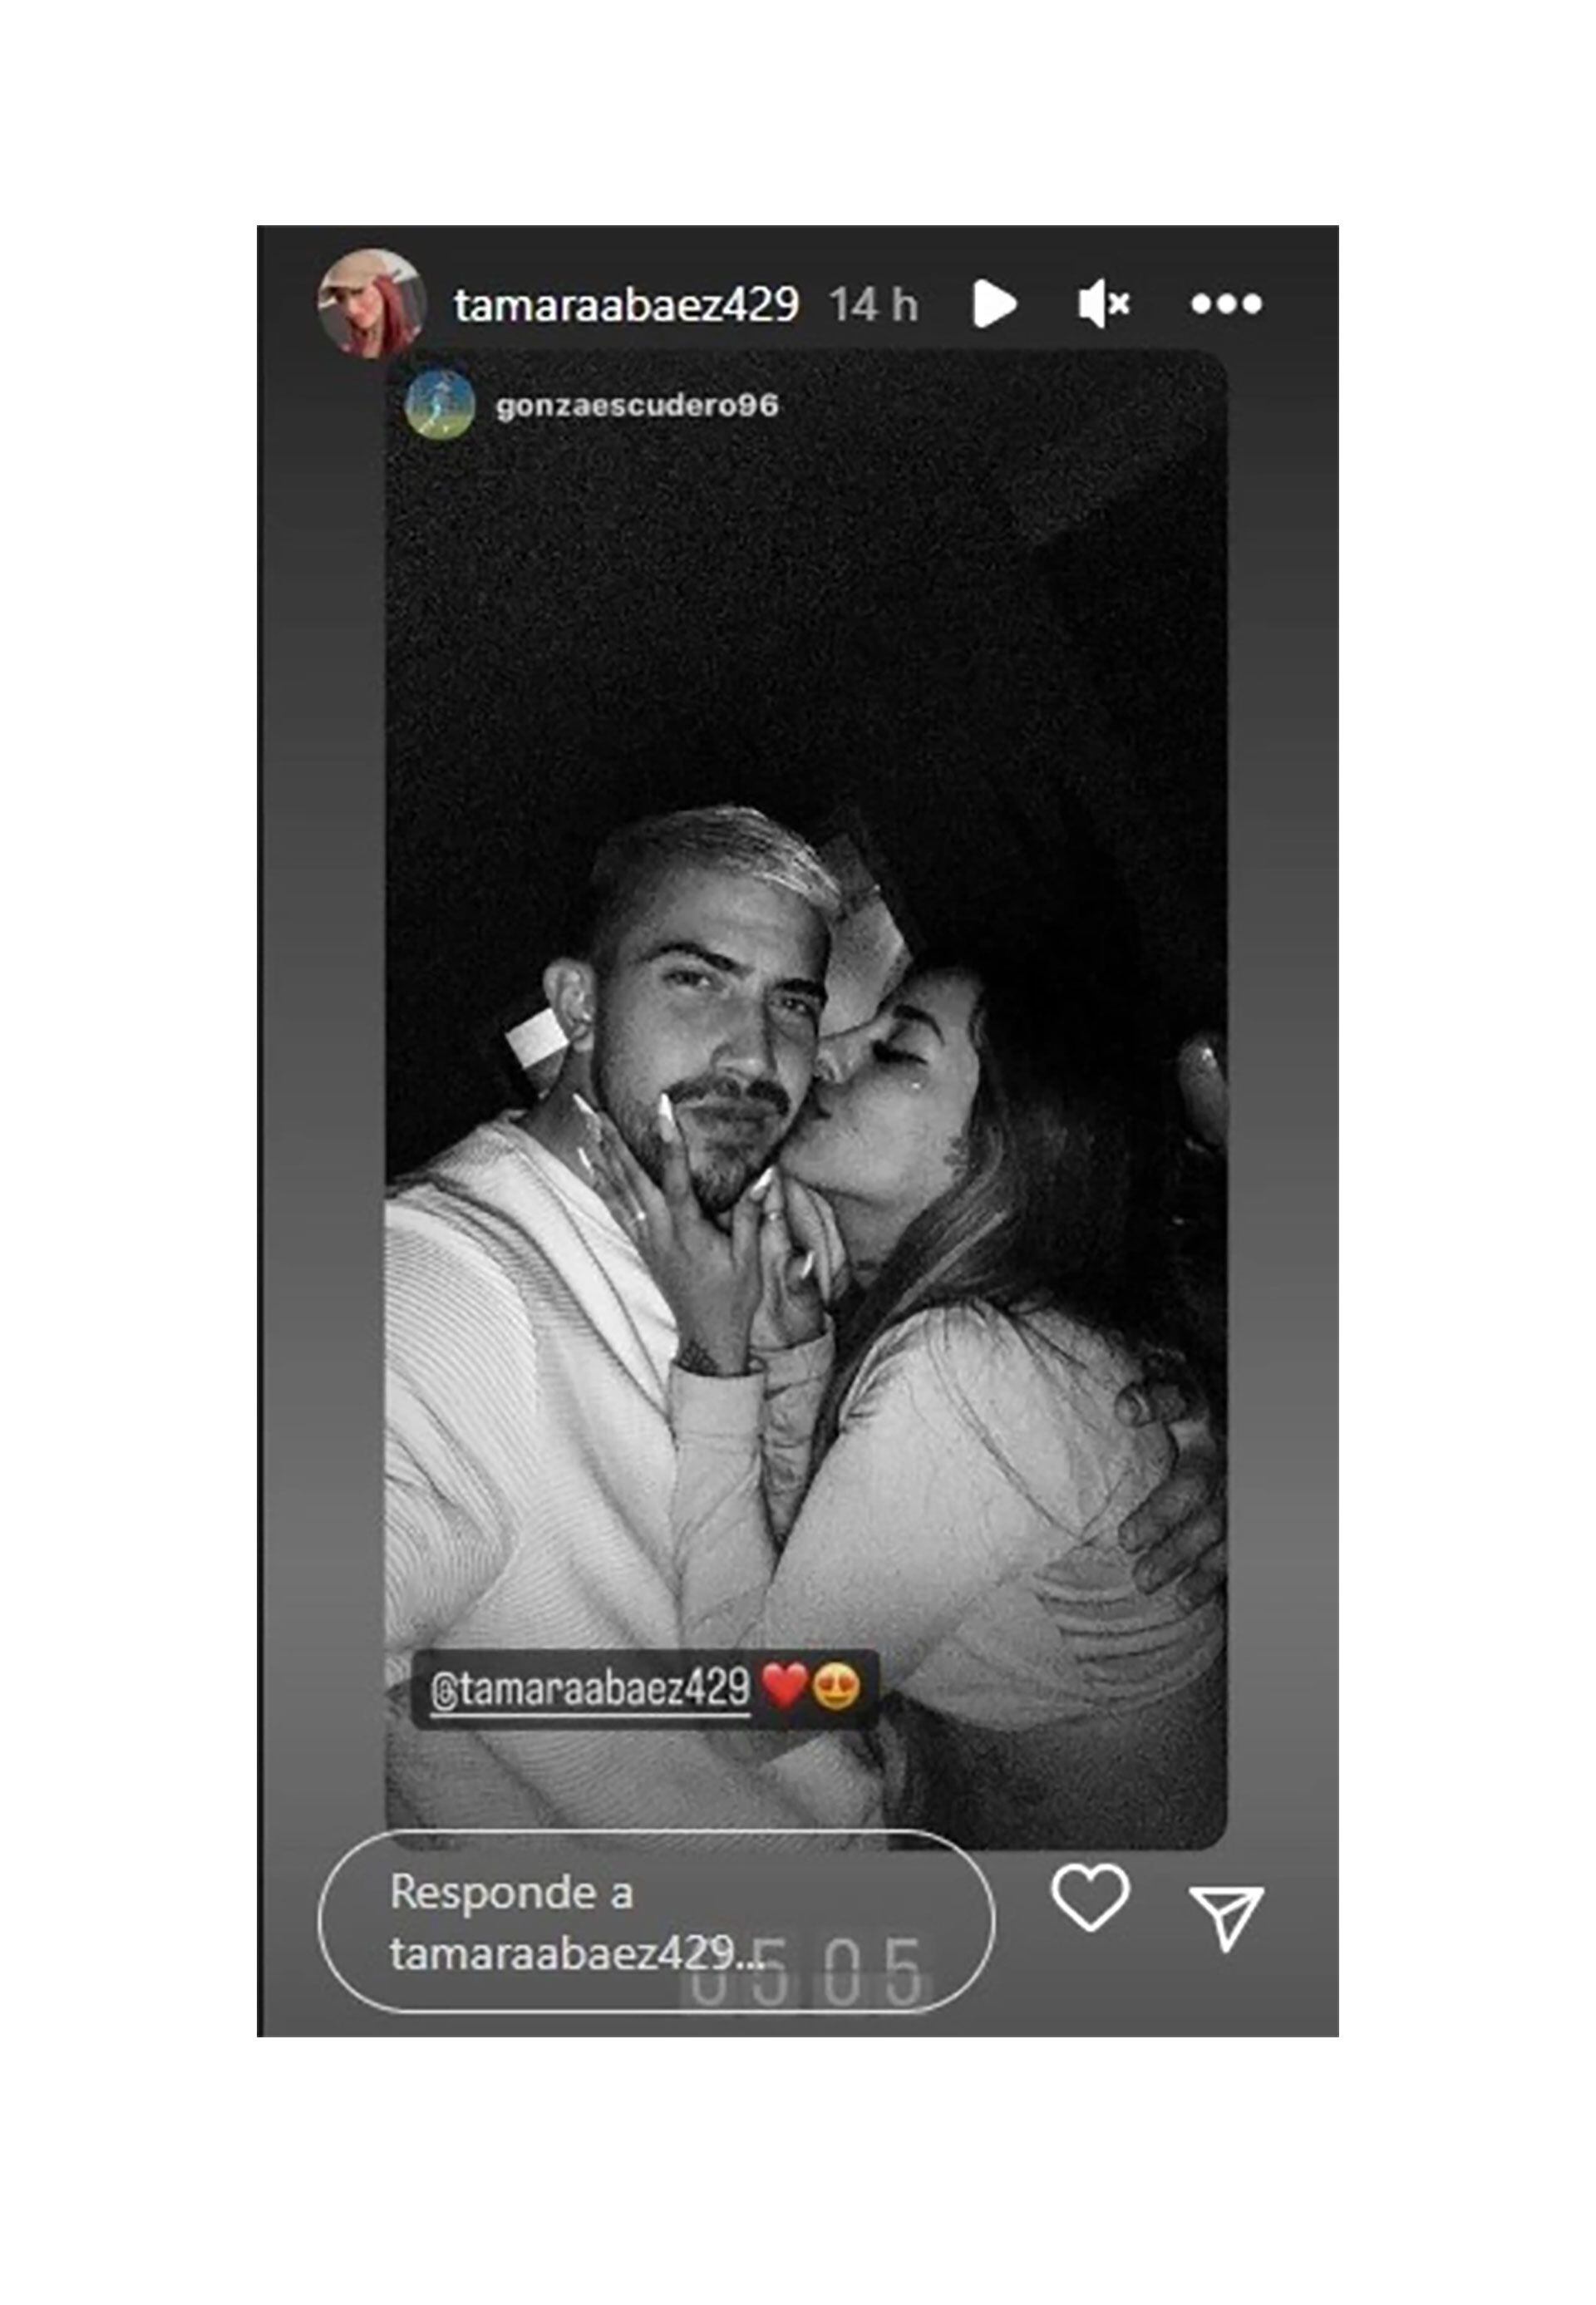 La joven está saliendo con el futbolista Gonzalo Escudero (Instagram)